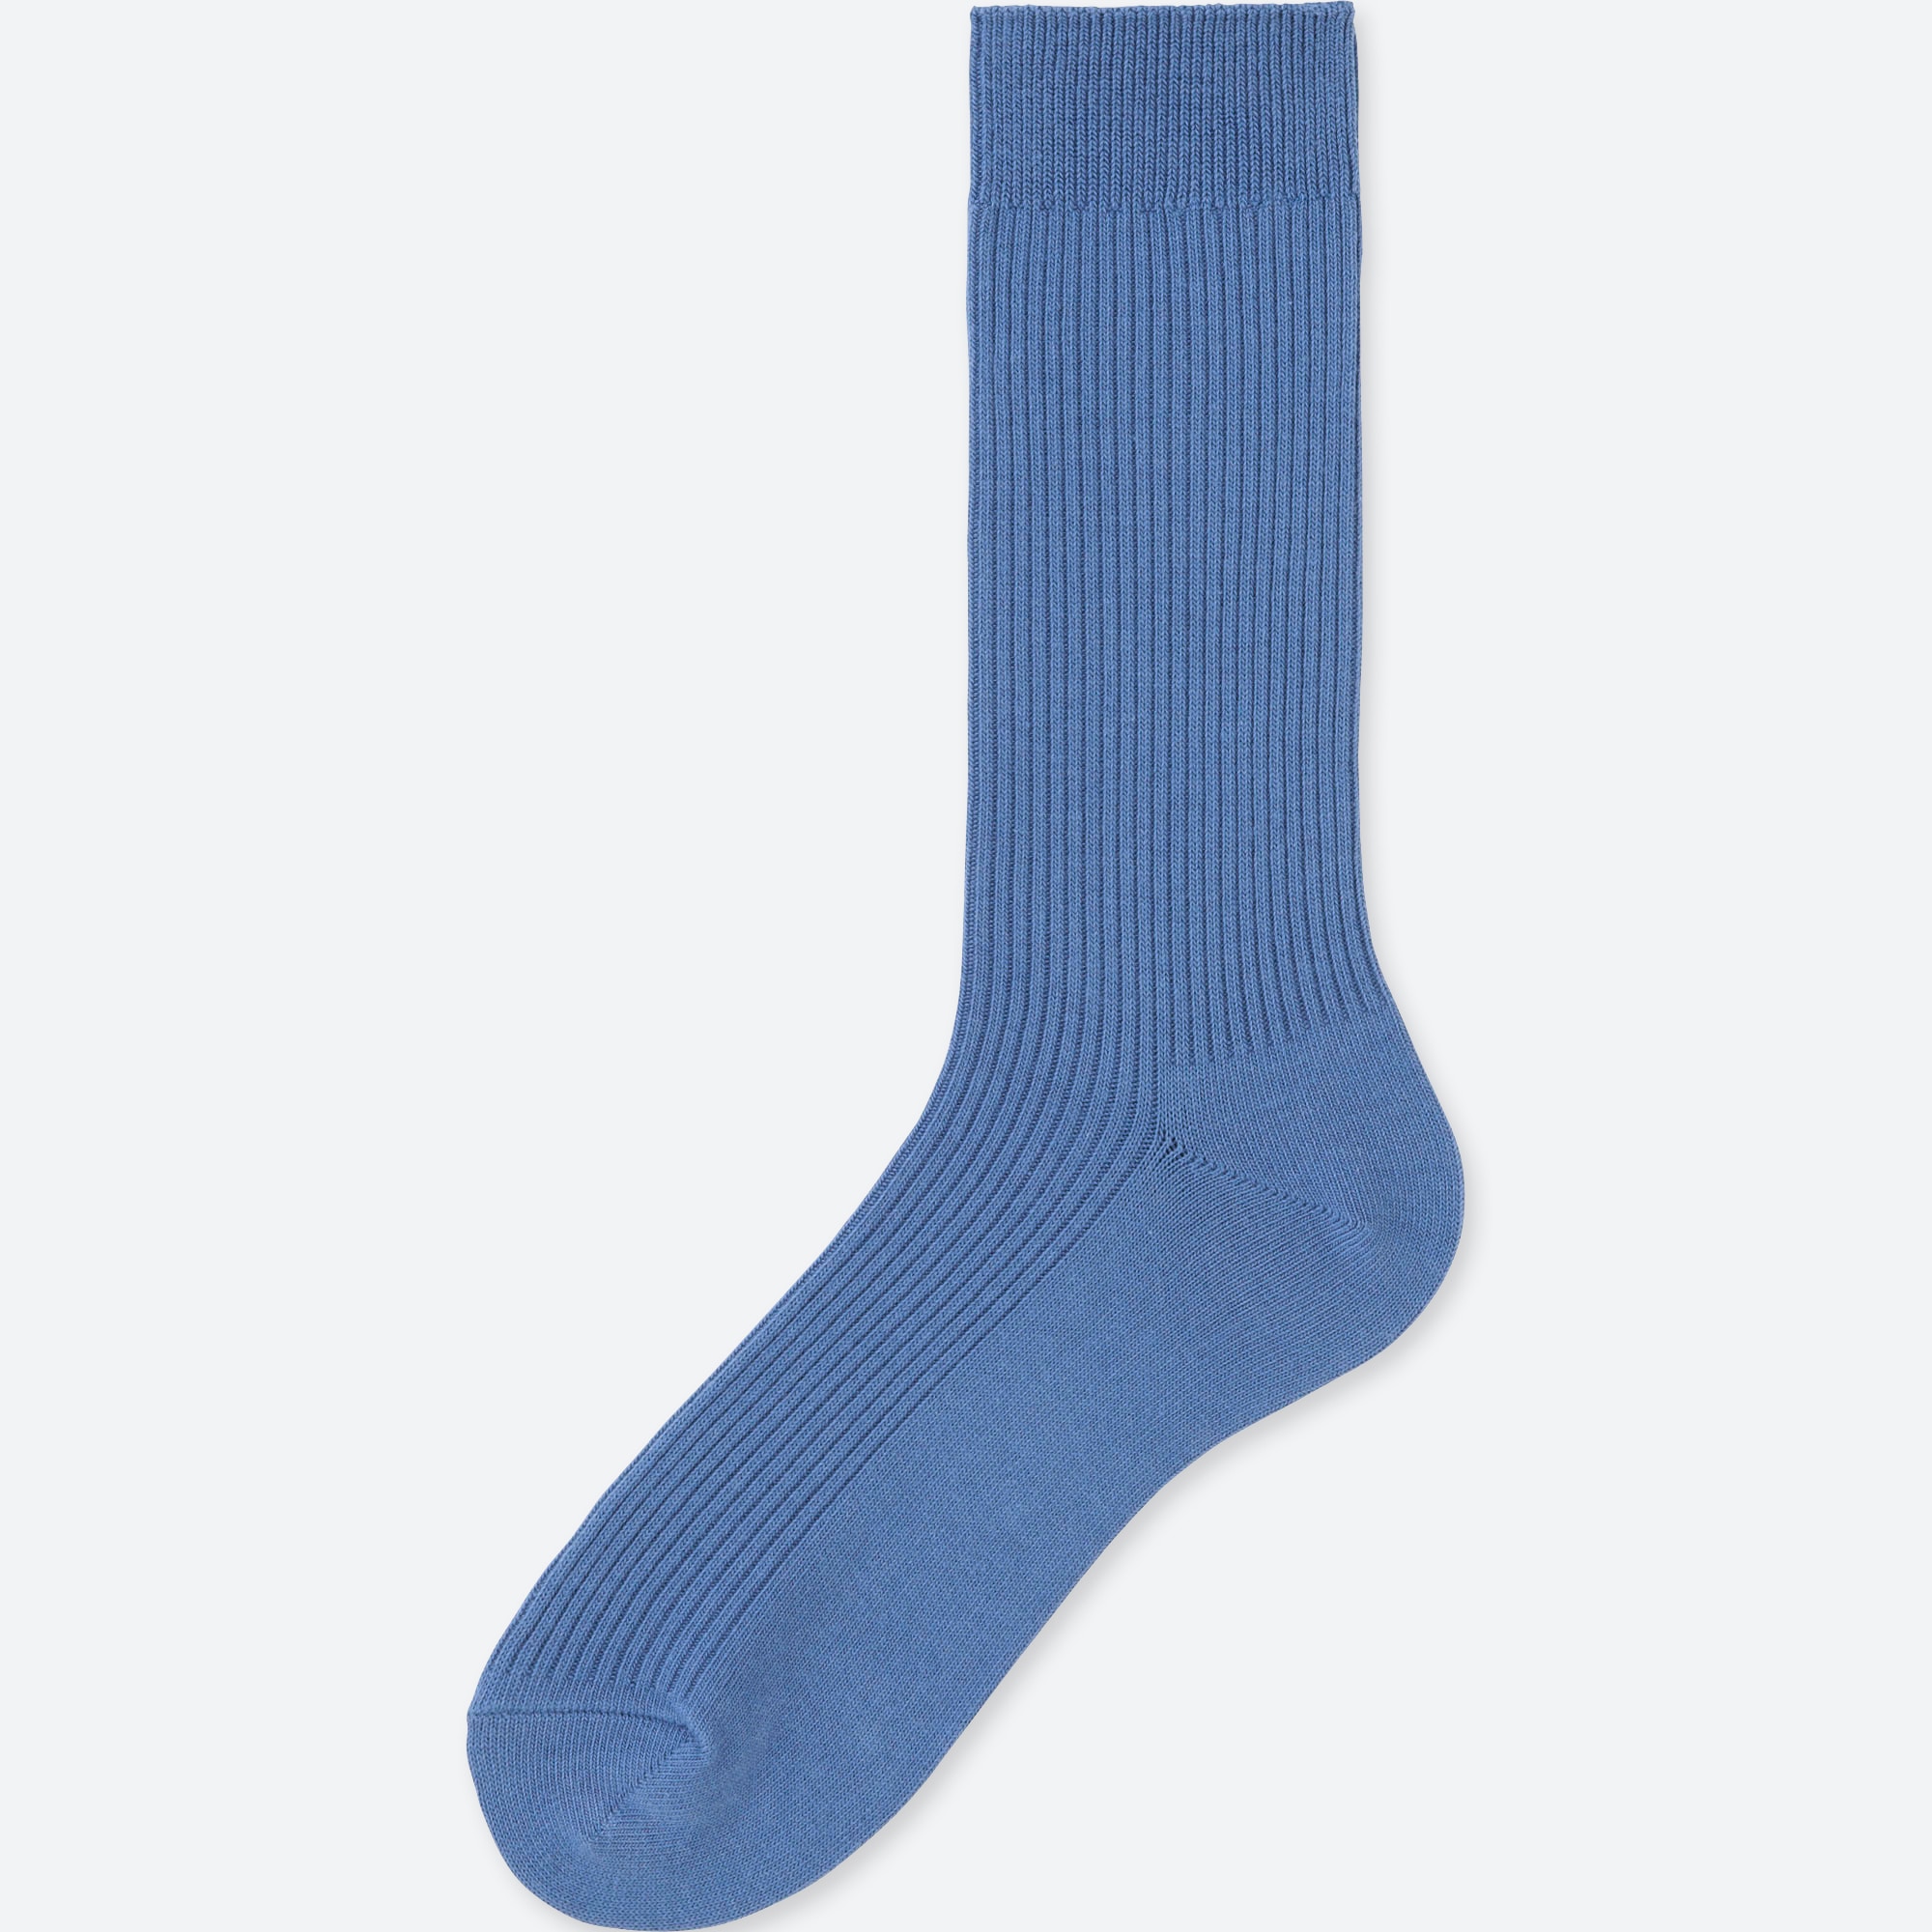 Uniqlo Sock Size Chart